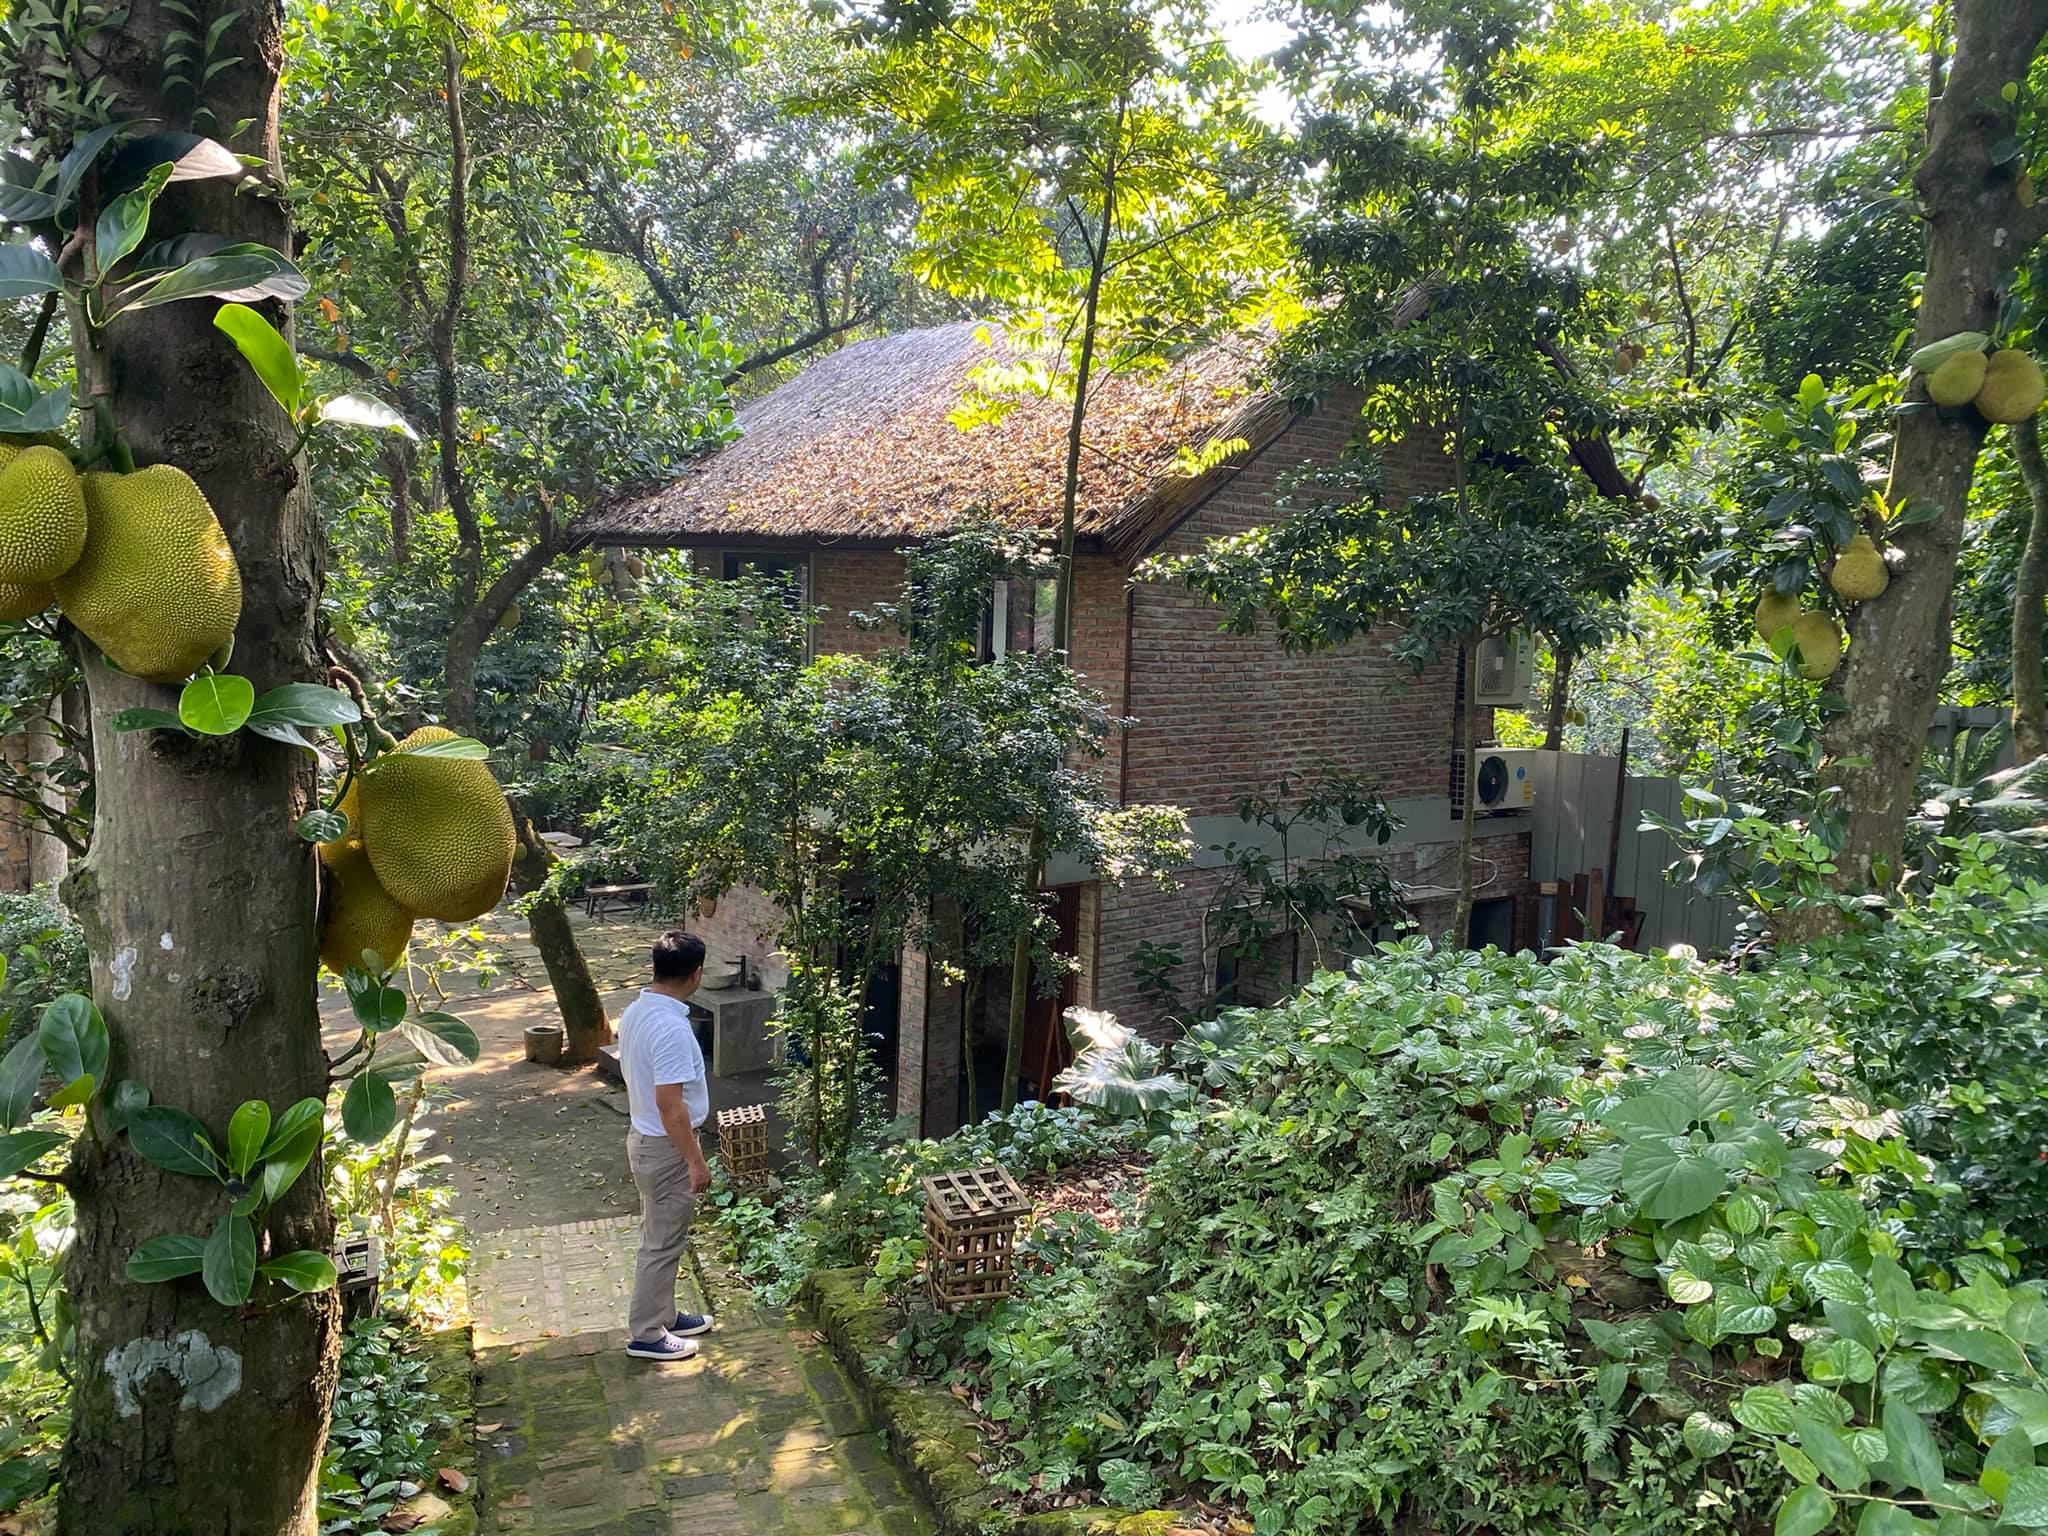 Mê mẩn với căn nhà second-home đẹp đến phát thèm tại ngoại ô Hà Nội, lộ bí quyết nhà đẹp quanh năm chỉ với 0 đồng của bà chủ nhà - Ảnh 14.